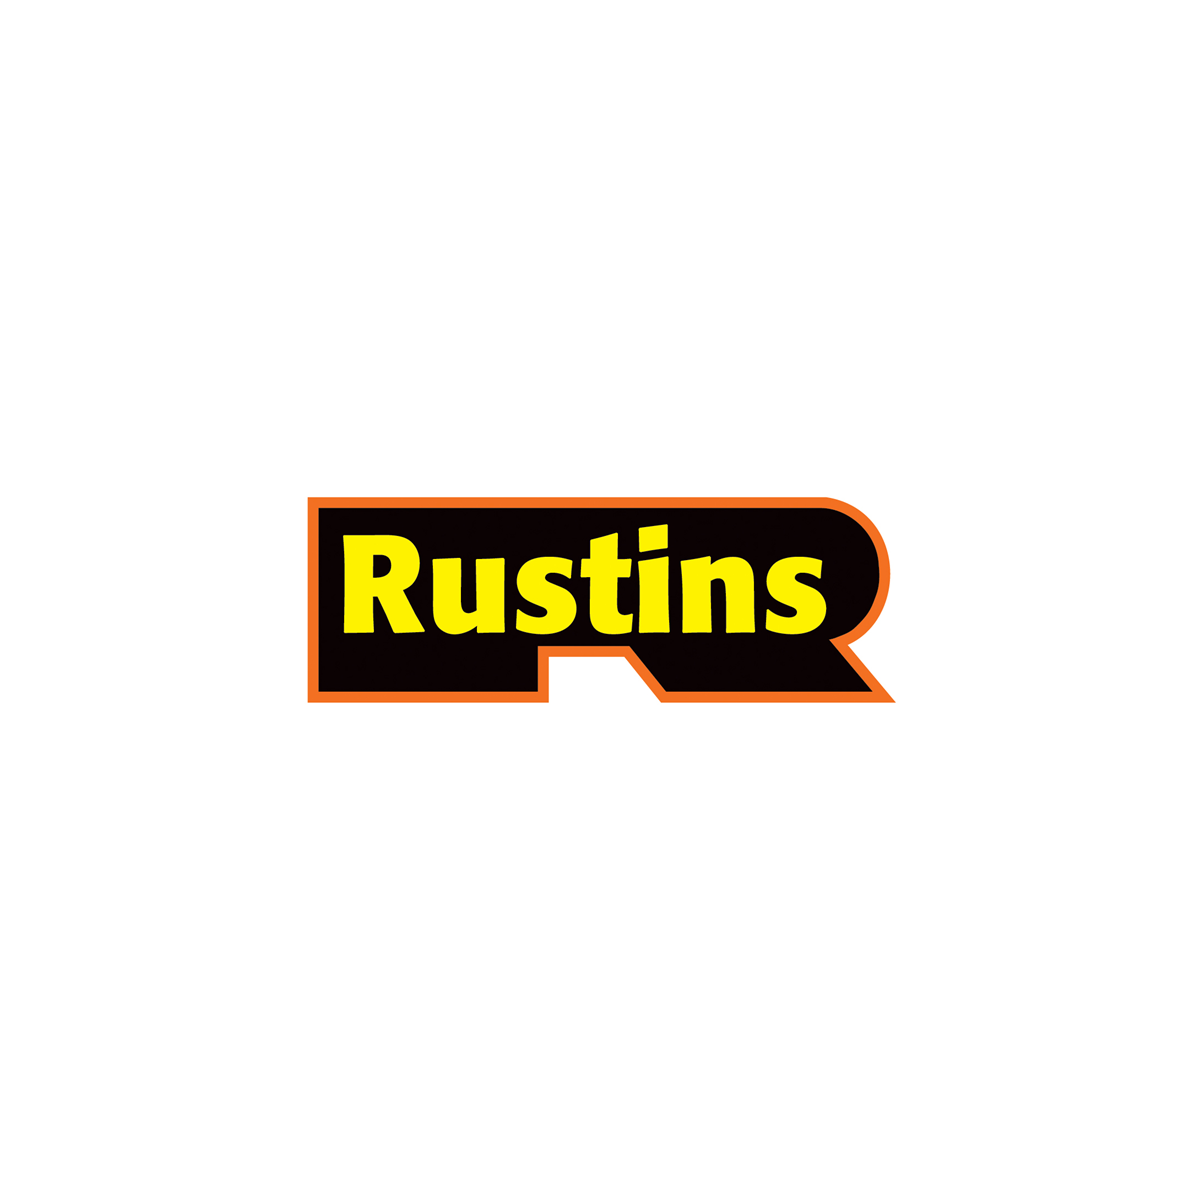 Where to buy Rustins Matt Varnish